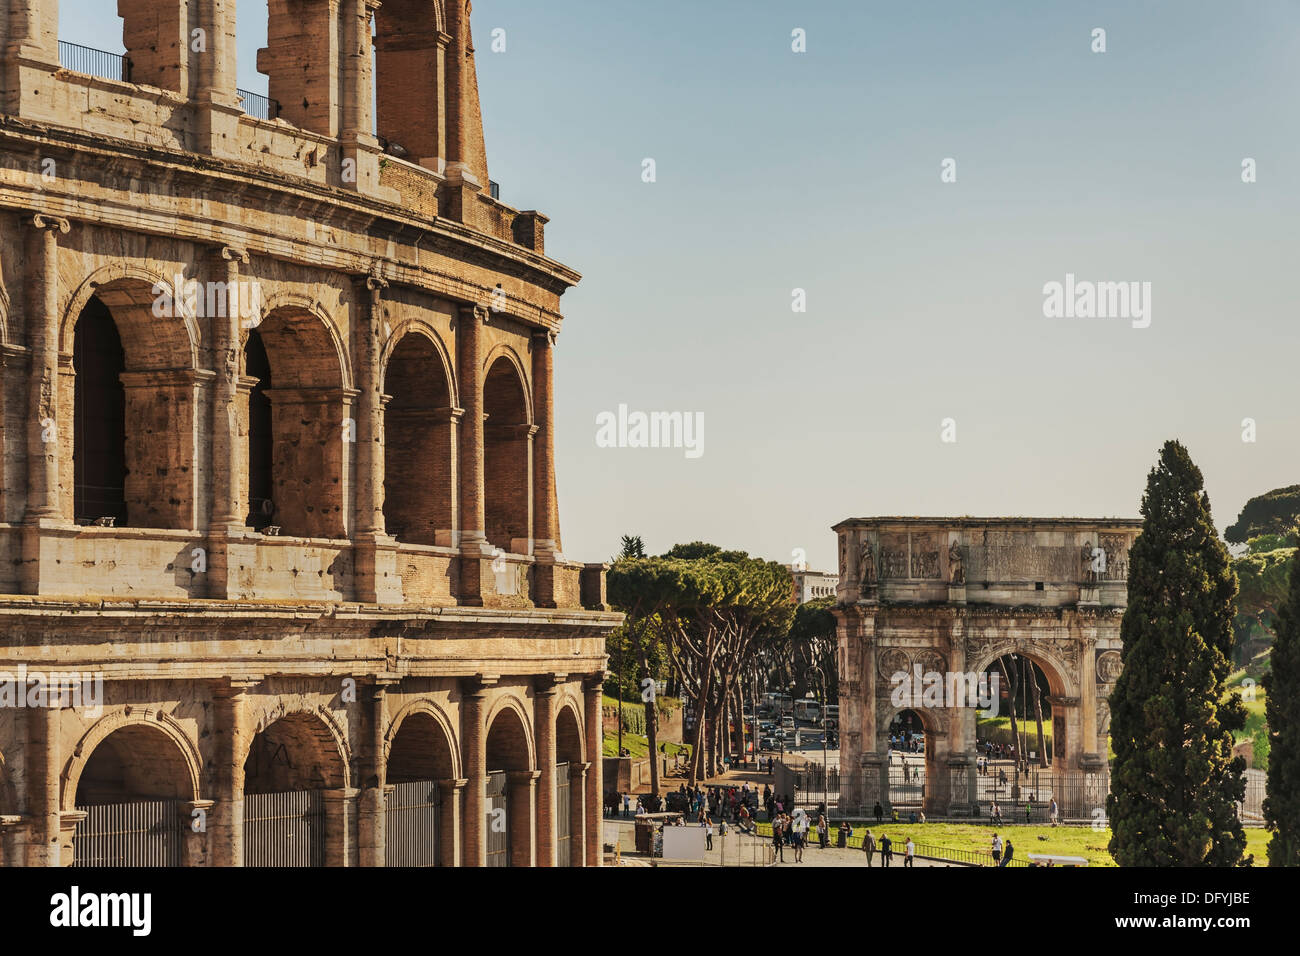 Le Colisée est le plus grand amphithéâtre construit dans la Rome antique de 72 à 80 après J.-C., Rome, Latium, Italie, Europe Banque D'Images